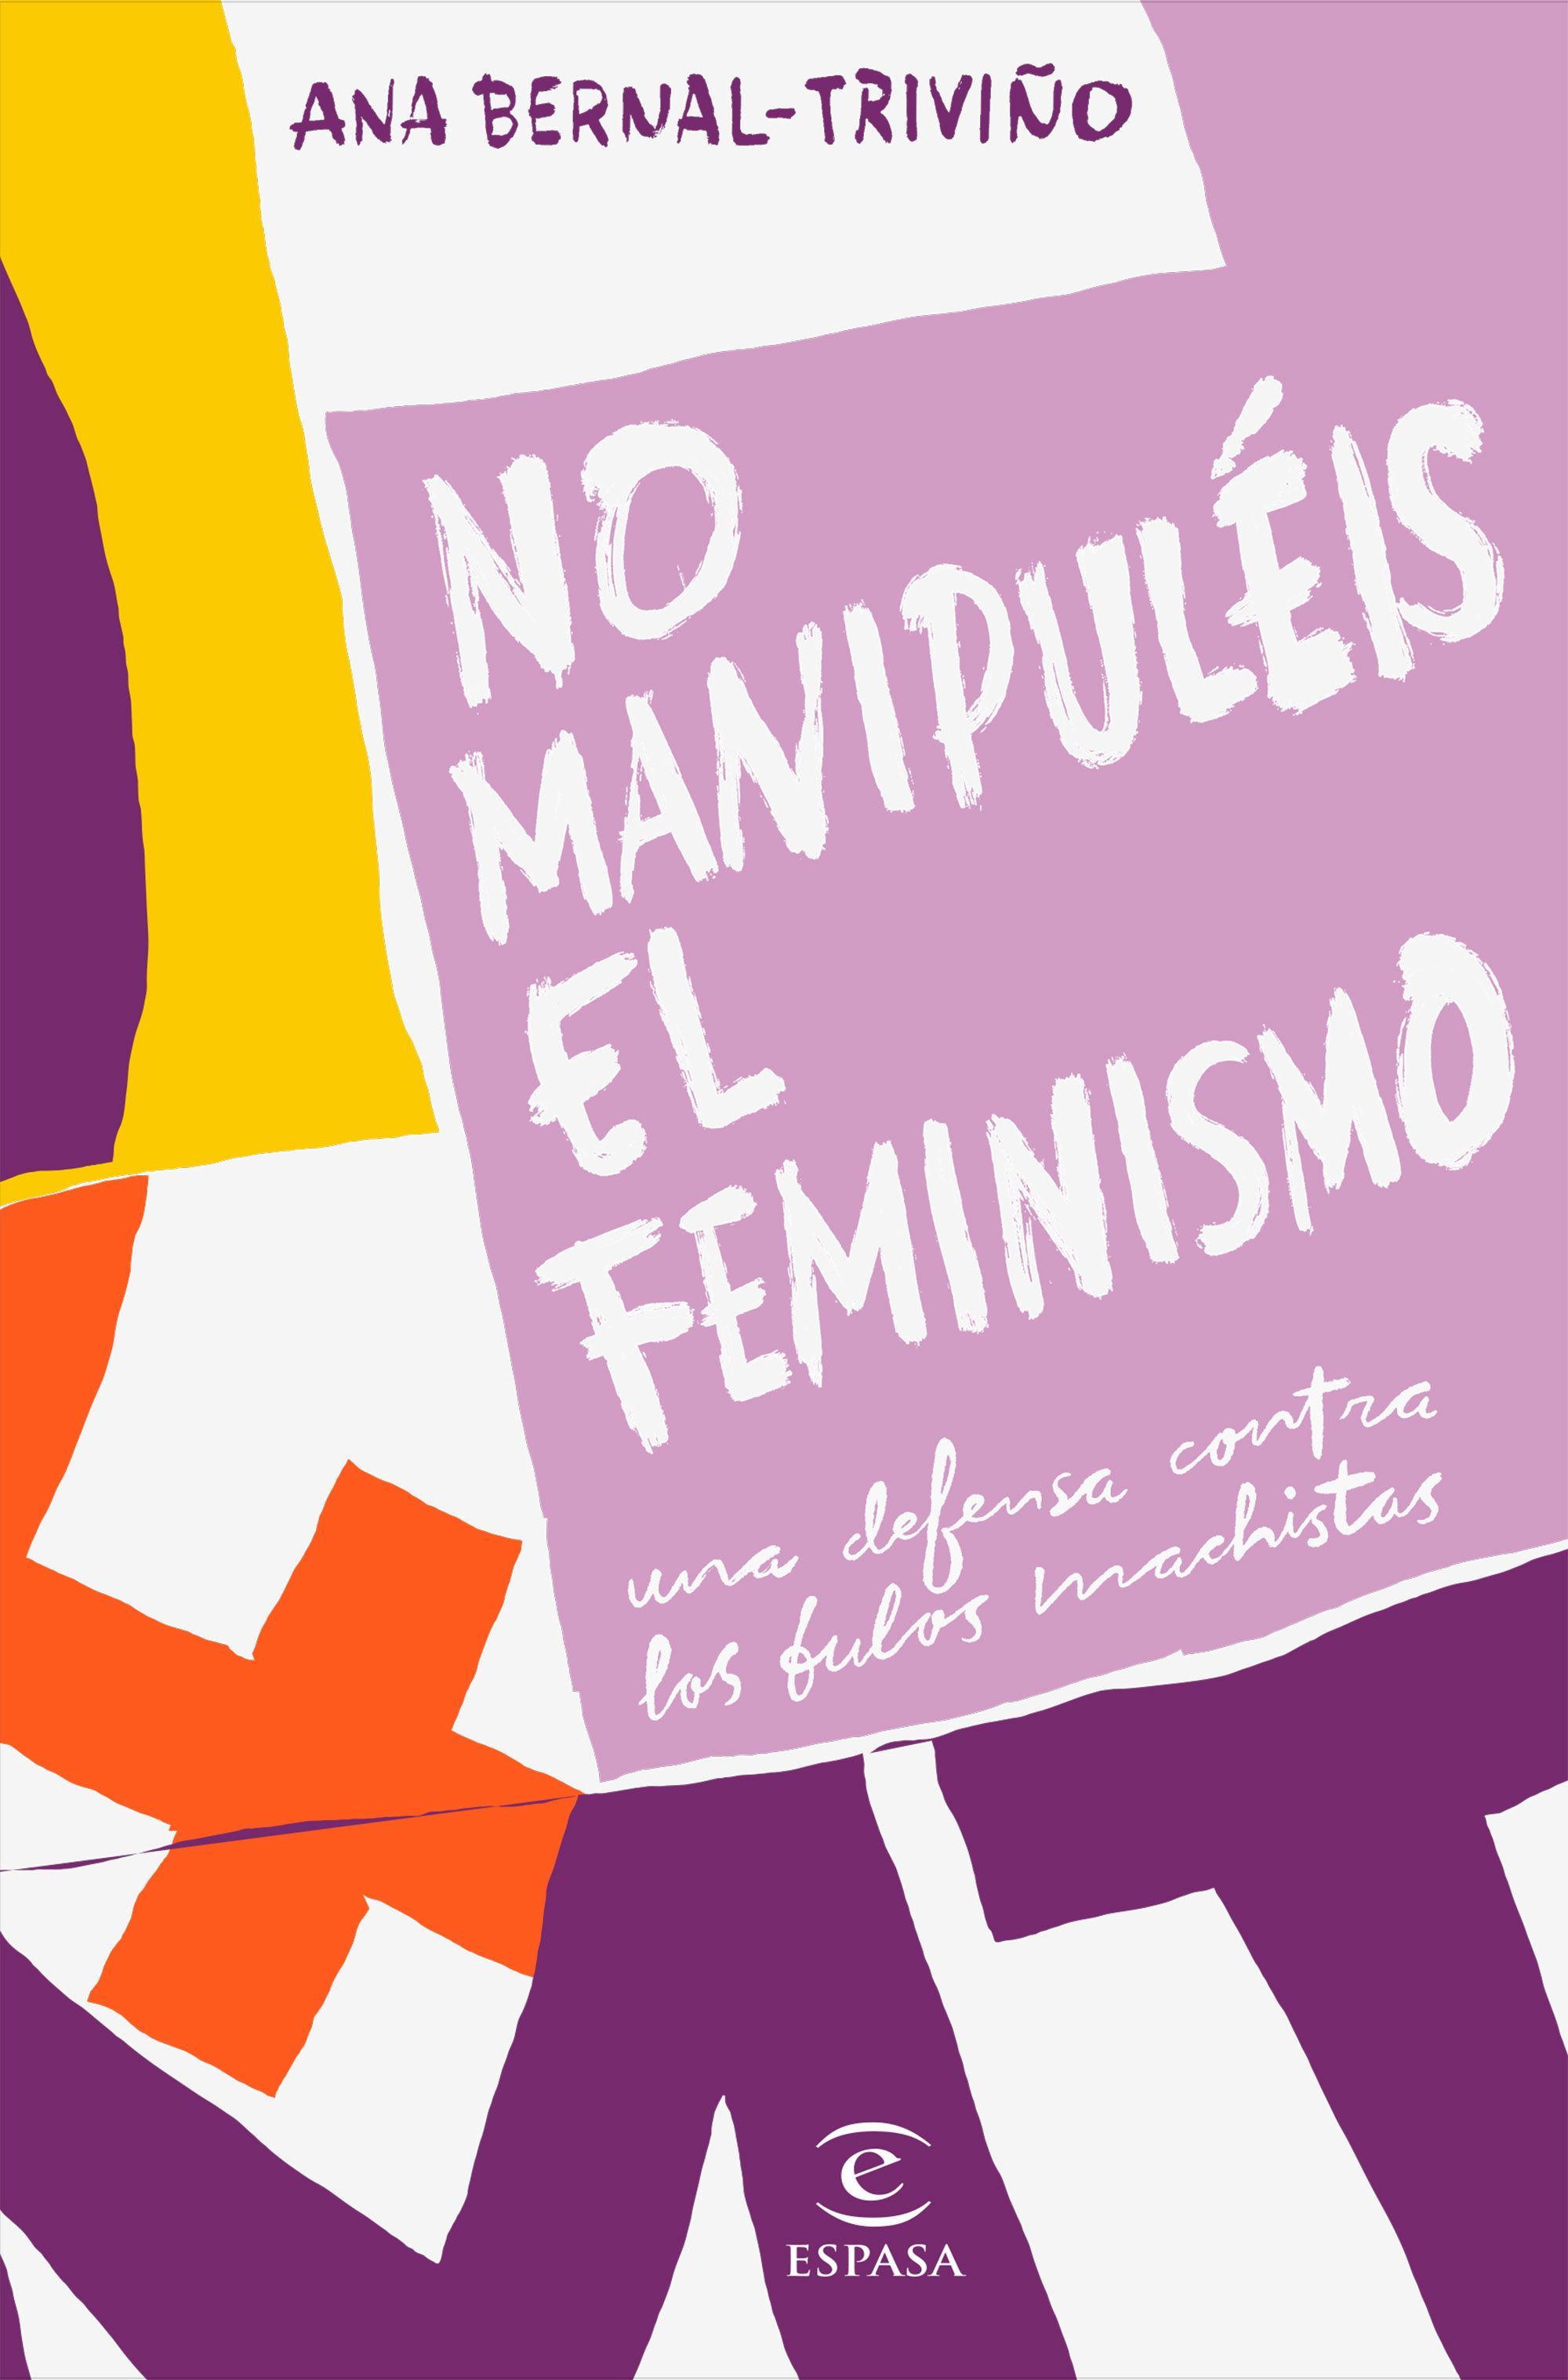 NO MANIPULÉIS EL FEMINISMO. UNA DEFENSA CONTRA LOS BULOS MACHISTAS